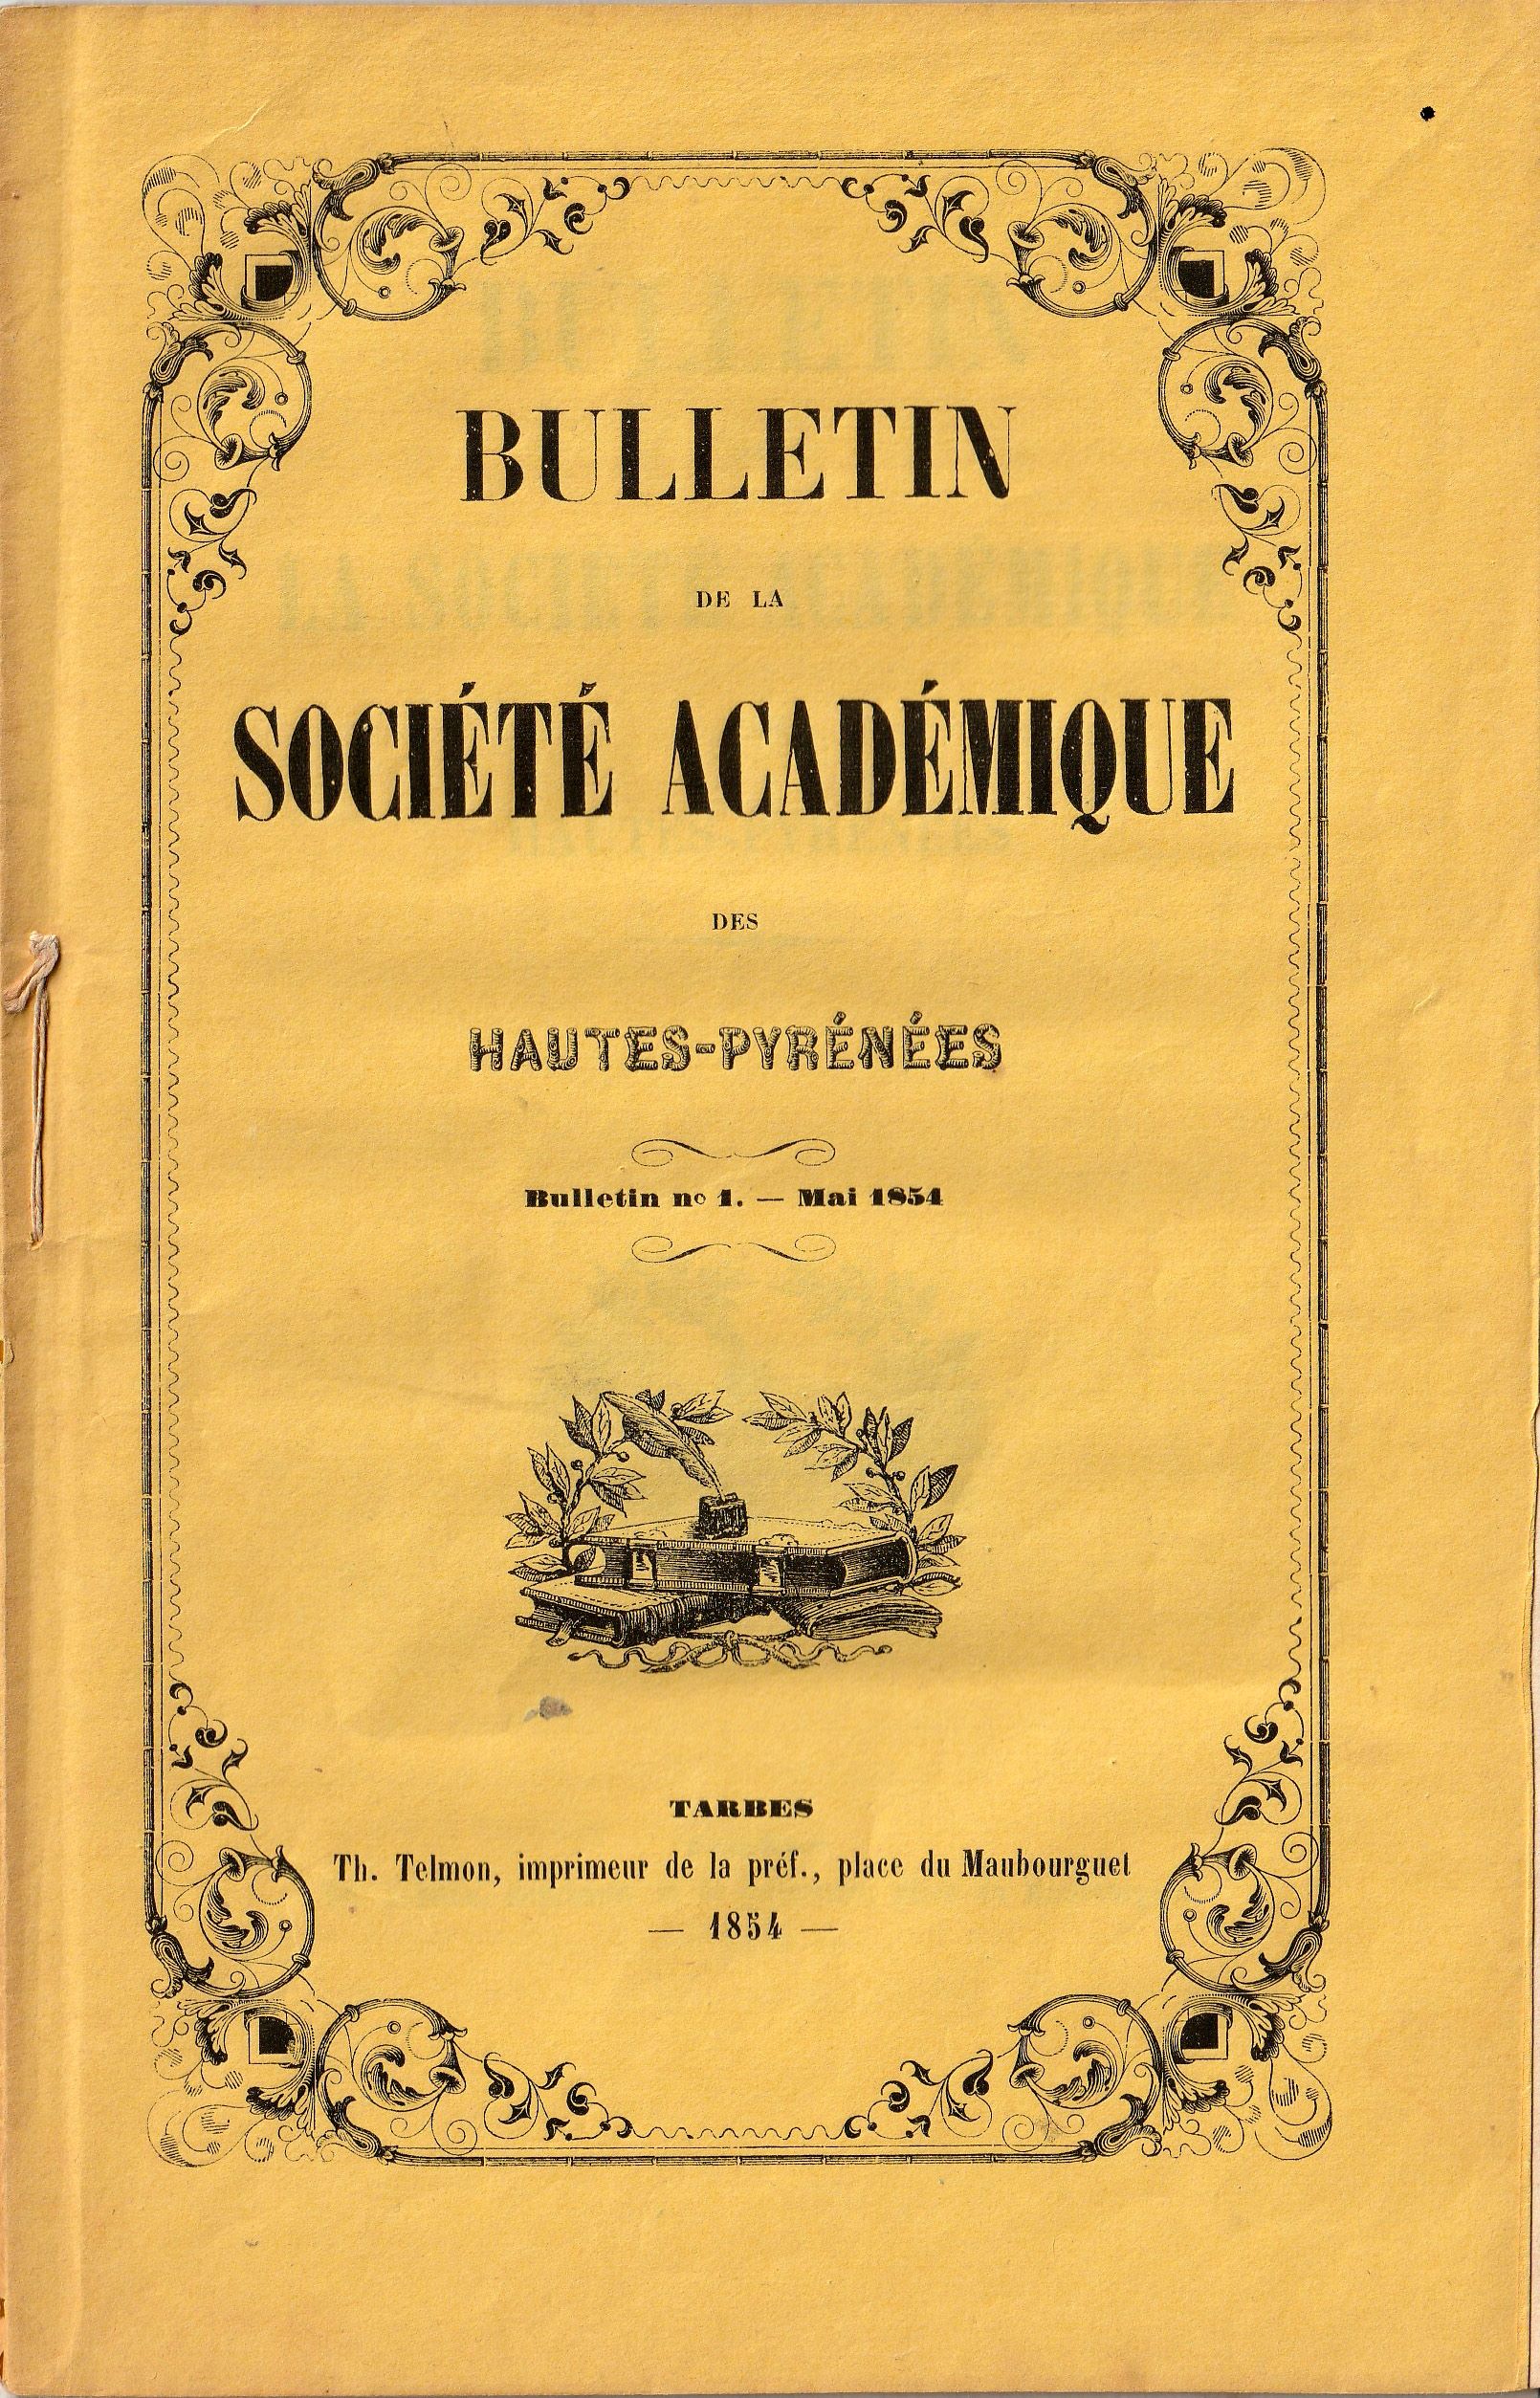 Bulletin n°1 de la Société académique des Hautes-Pyrénées